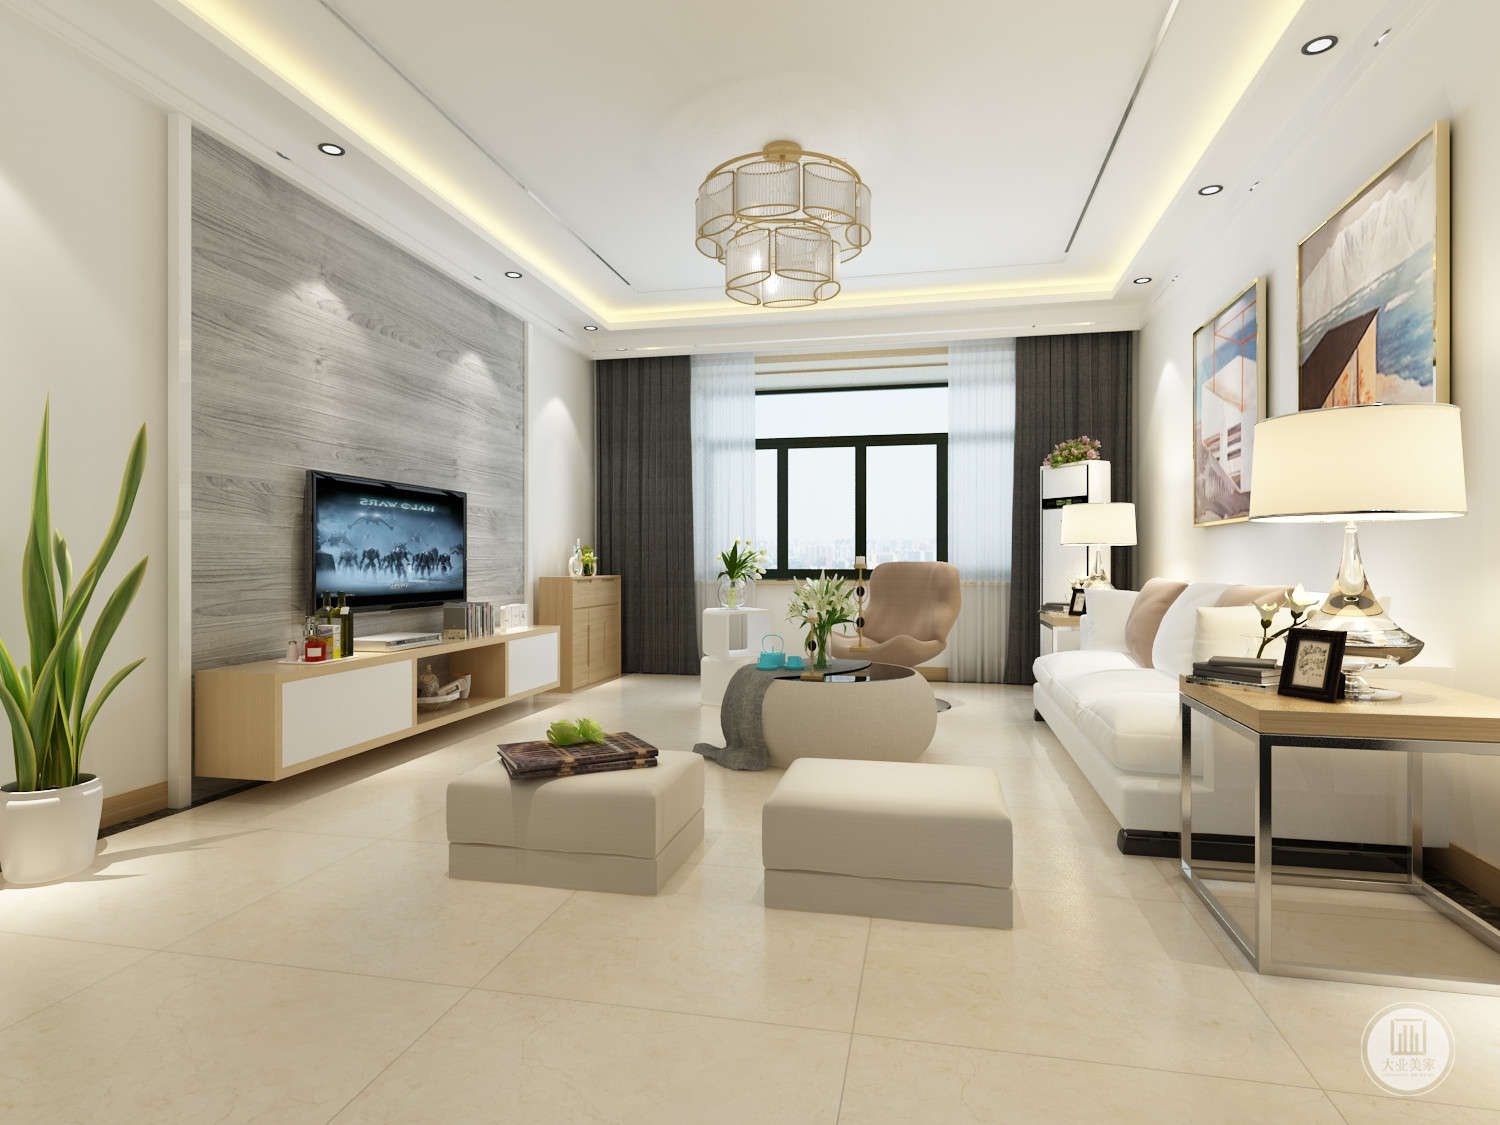 客厅每个空间的过渡与比例，家具的选择、材质与尺度的把握，在品质感与舒适度上都有所考究。吊灯散发出温暖的光芒，又透露着时尚的气息.